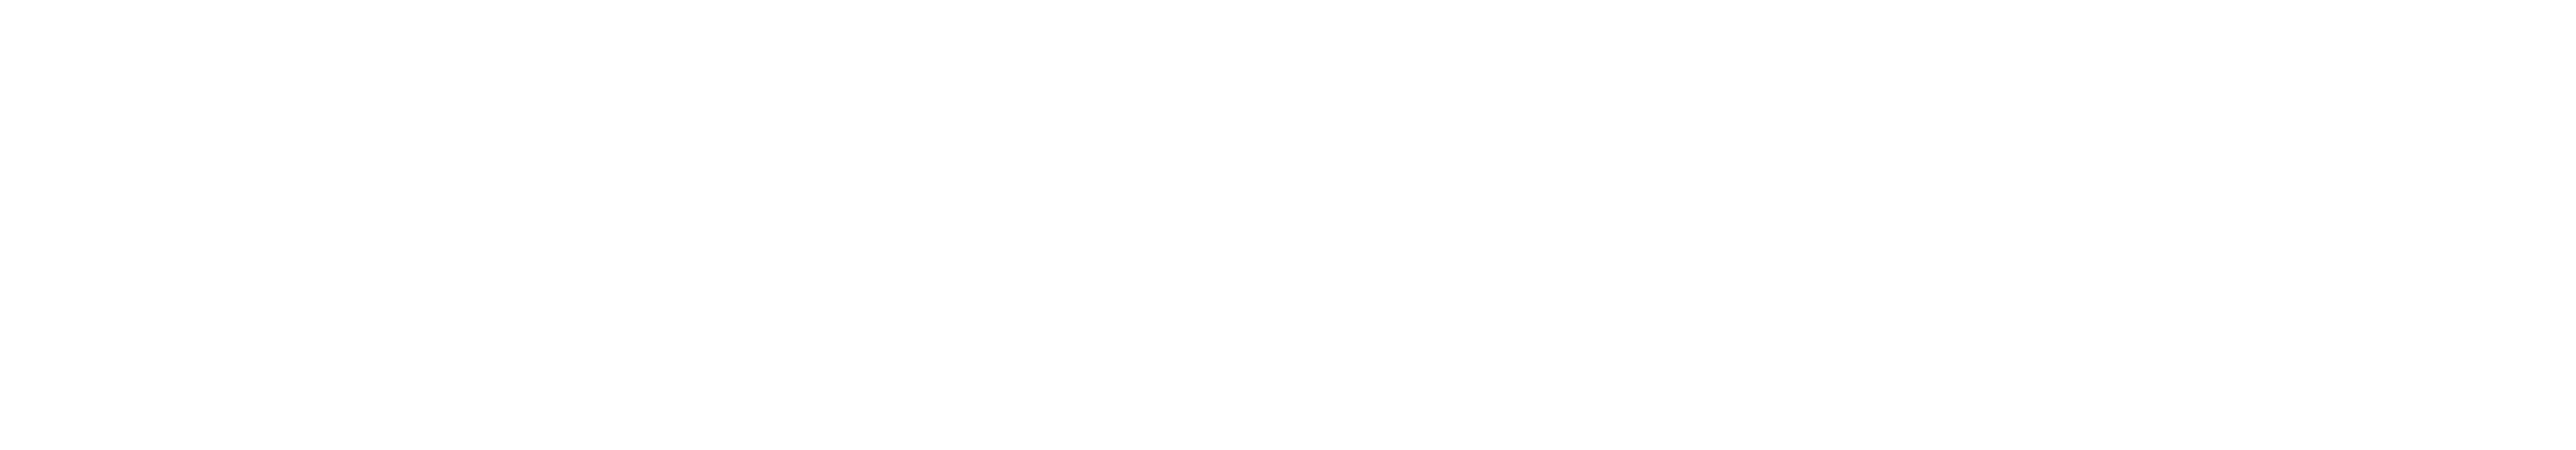 LogotipoPEC-bco